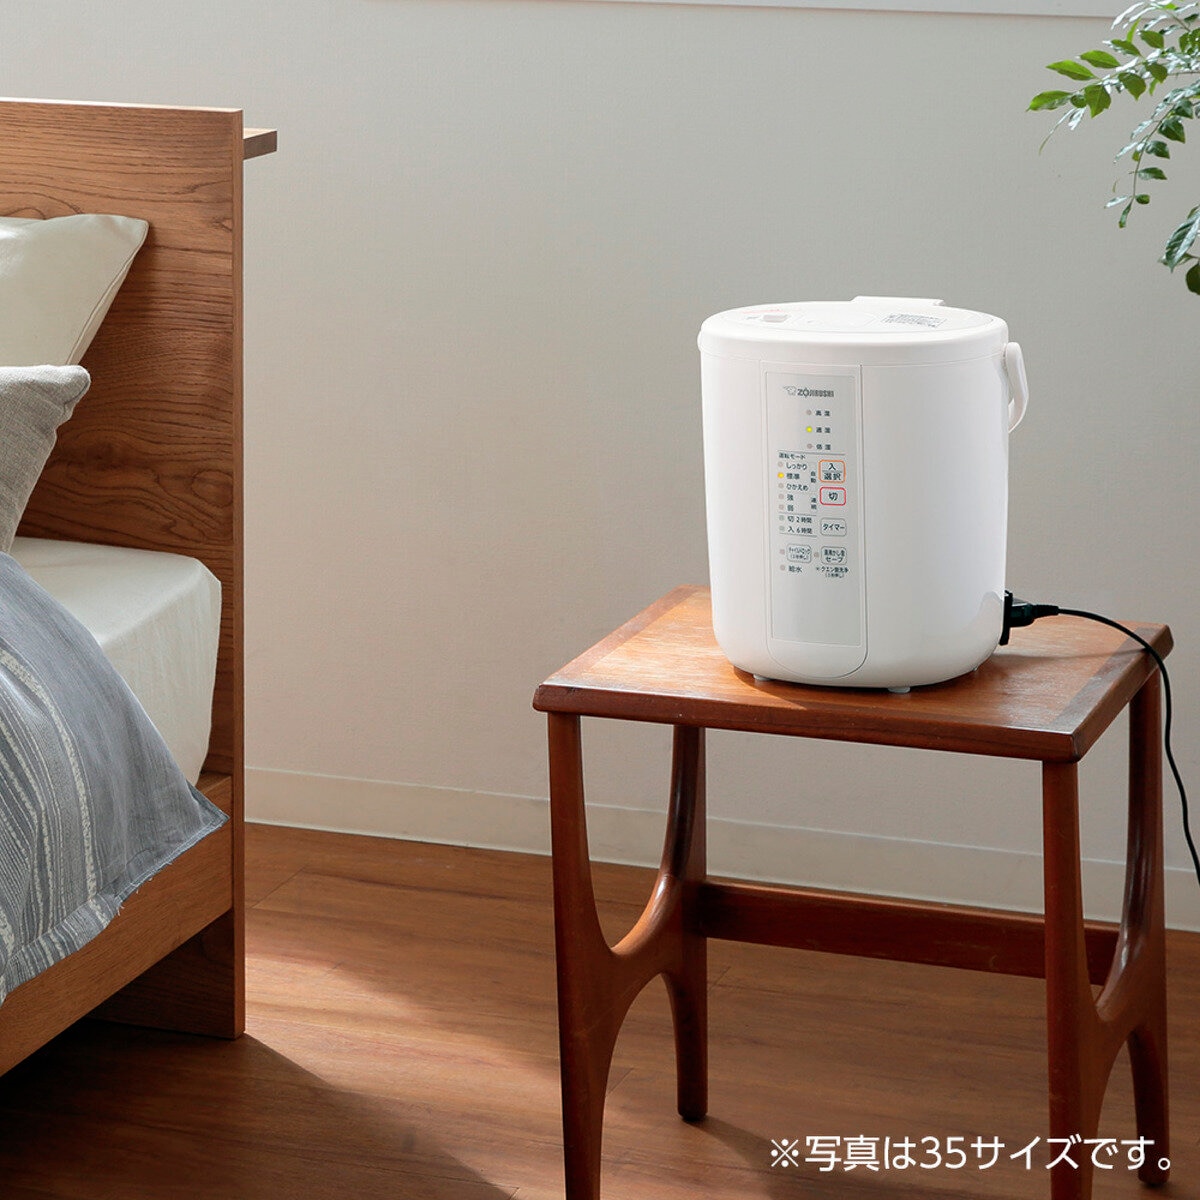 象印 スチーム加湿器 EERR50-WA | Costco Japan